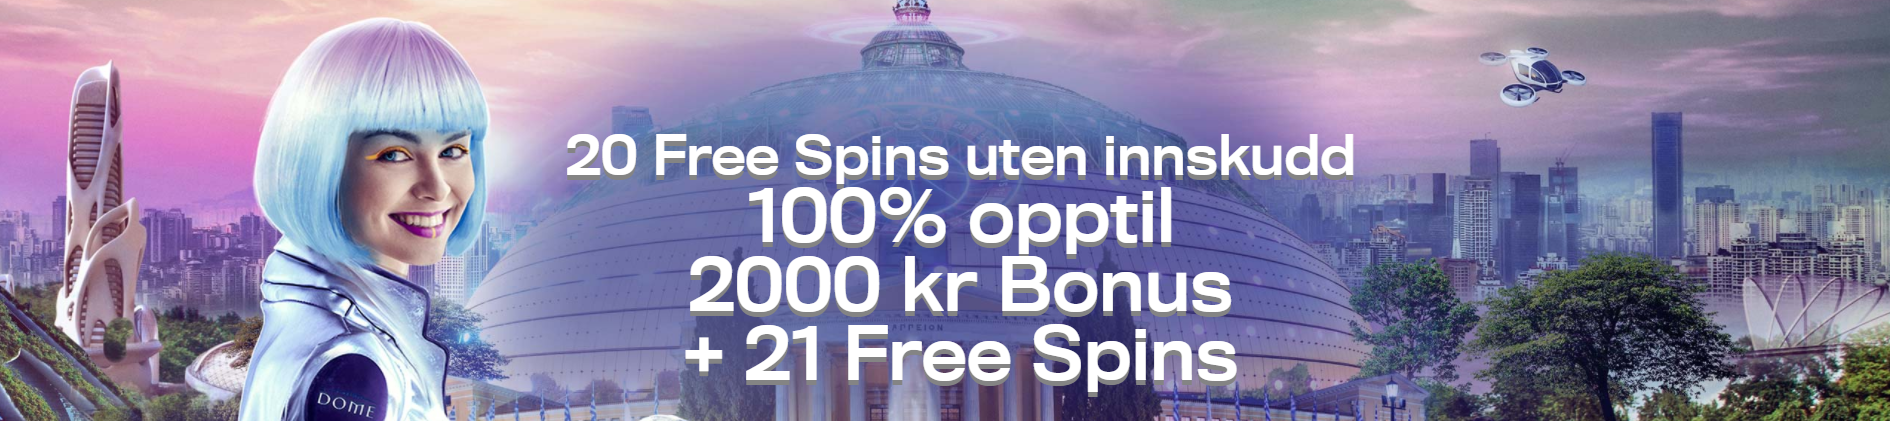 casino dome 2000 kr bonus og 21 free spins